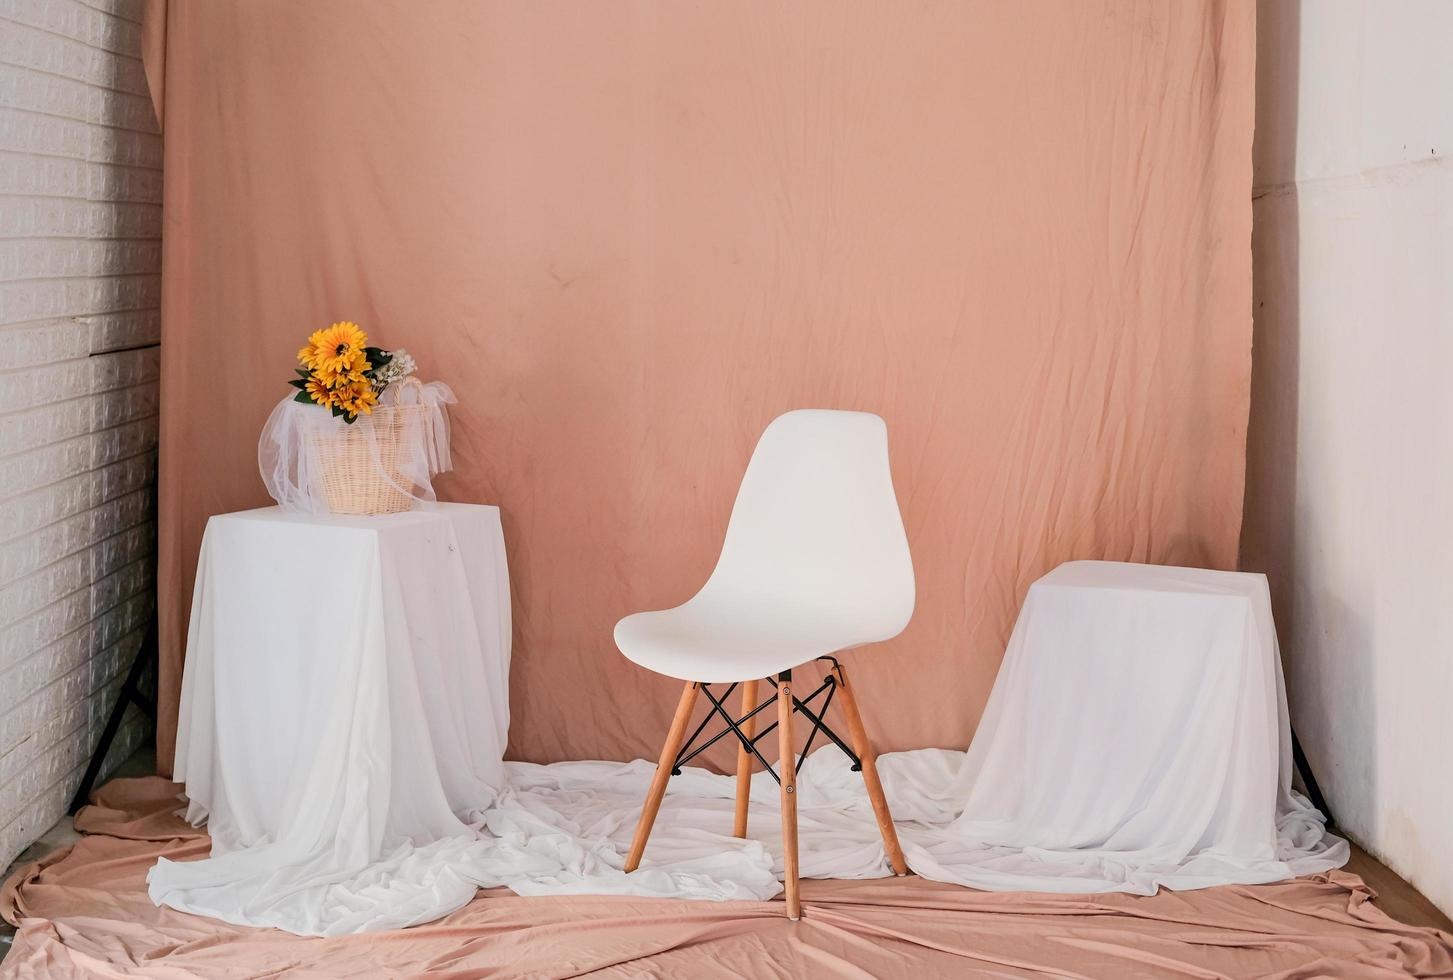 lo studio è allestito con pareti, tavoli, e il pavimento è rivestito di tessuto. installazione nel tema del colore rosa-arancio e bianco. foto